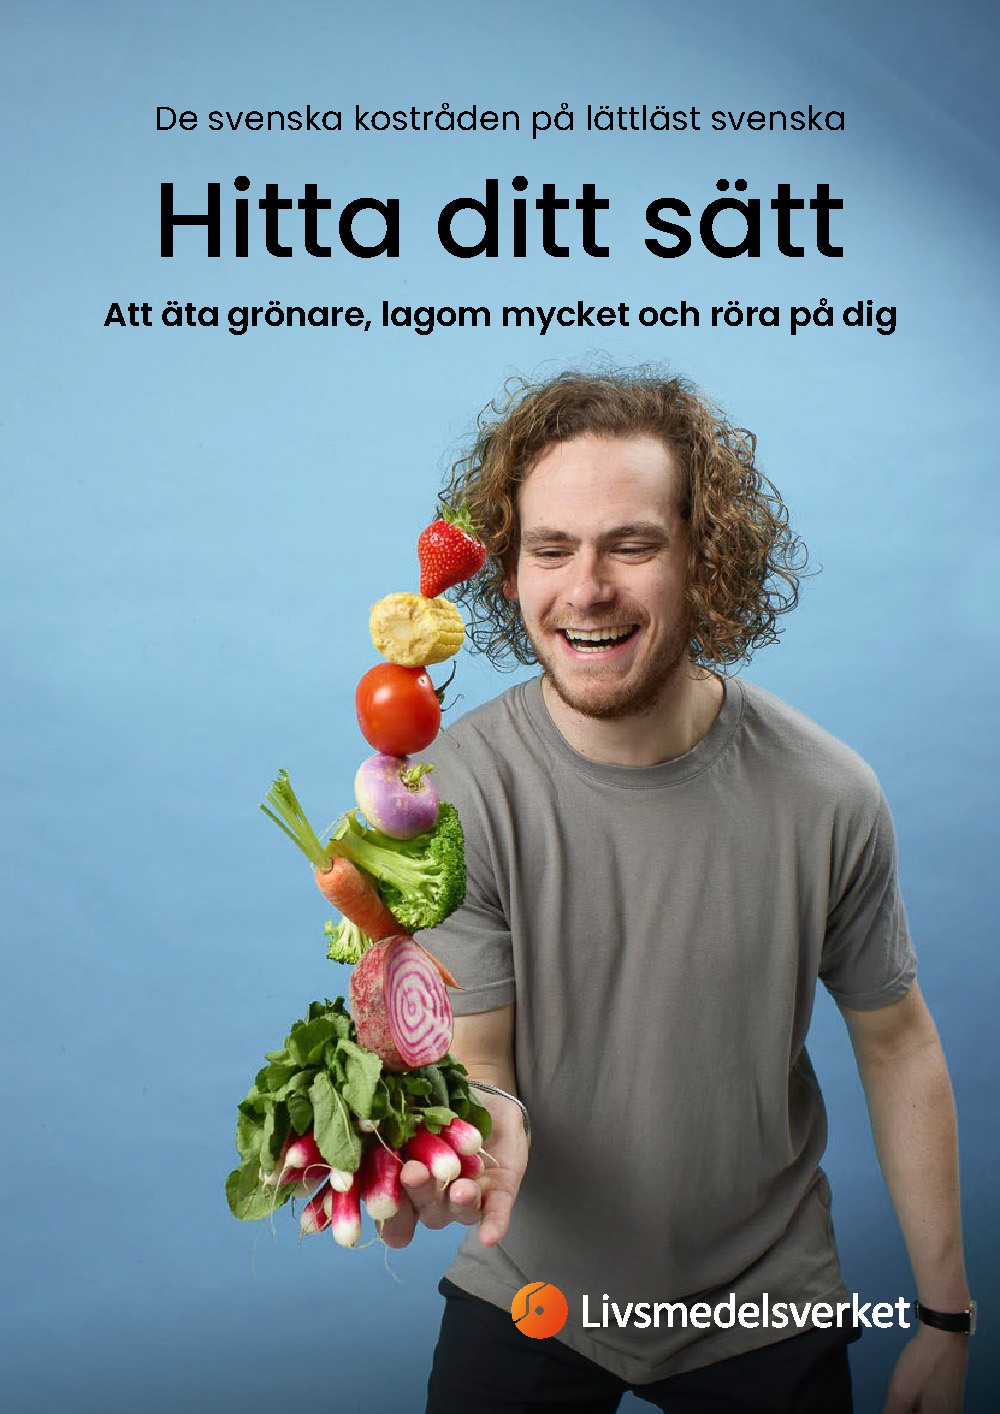 Framsidan av broschyren hitta ditt sätt med en man som balanserar grönsaker och frukt med en hand.